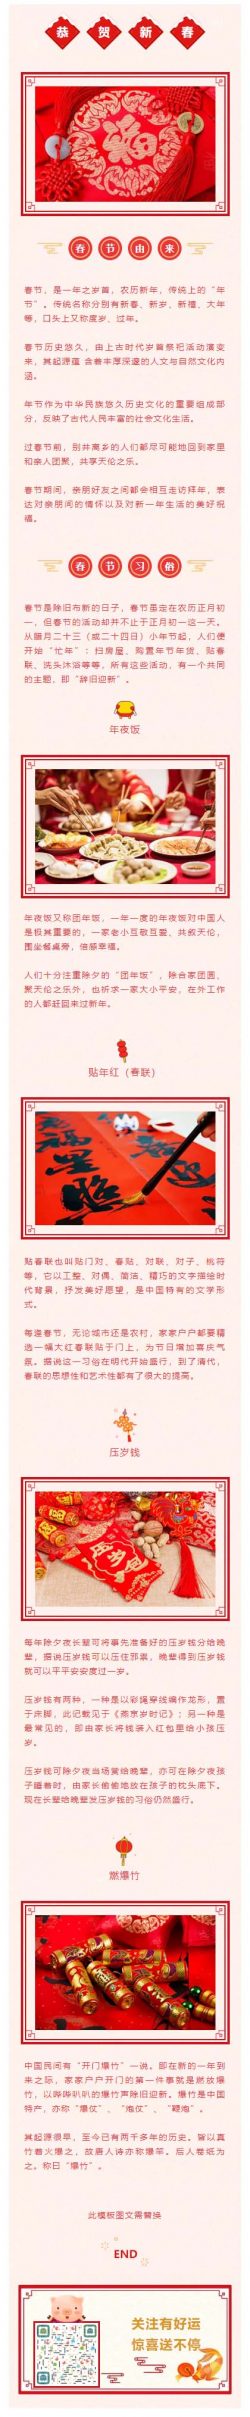 春节农历新年传统上的“年节”红色节日模板